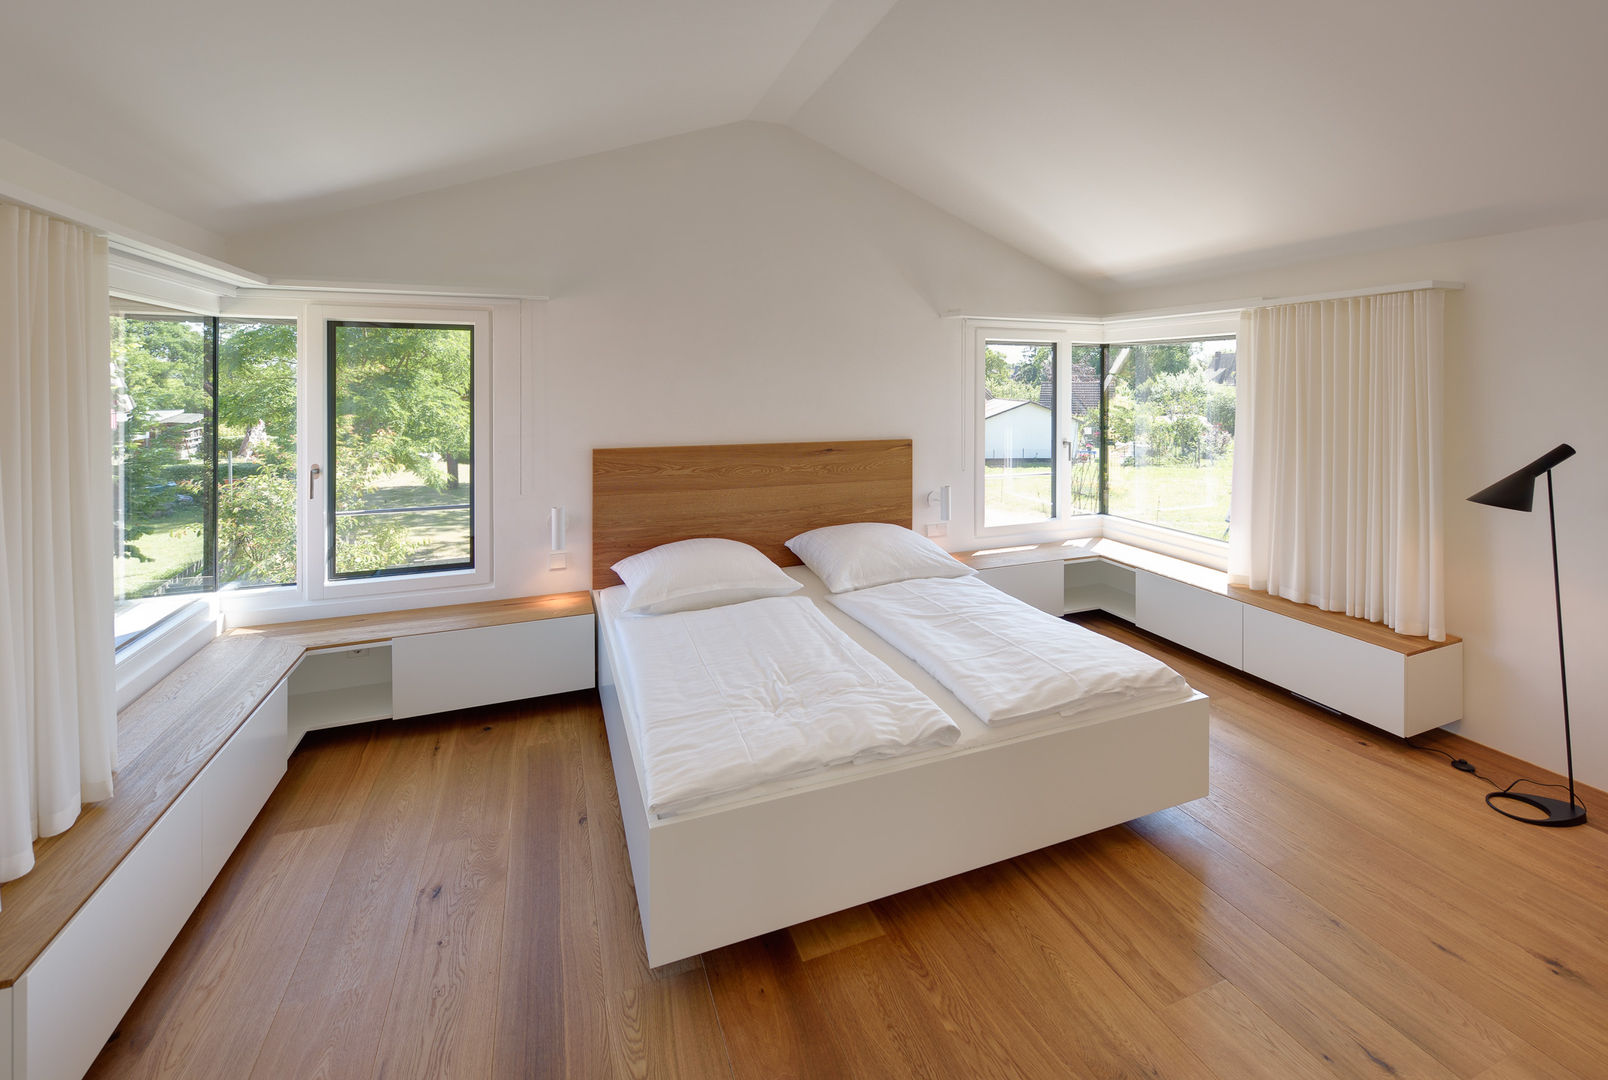 Modernes Ferienwohnhaus in Anlehnung an ein traditionelles Drempelhaus, Möhring Architekten Möhring Architekten Modern Bedroom